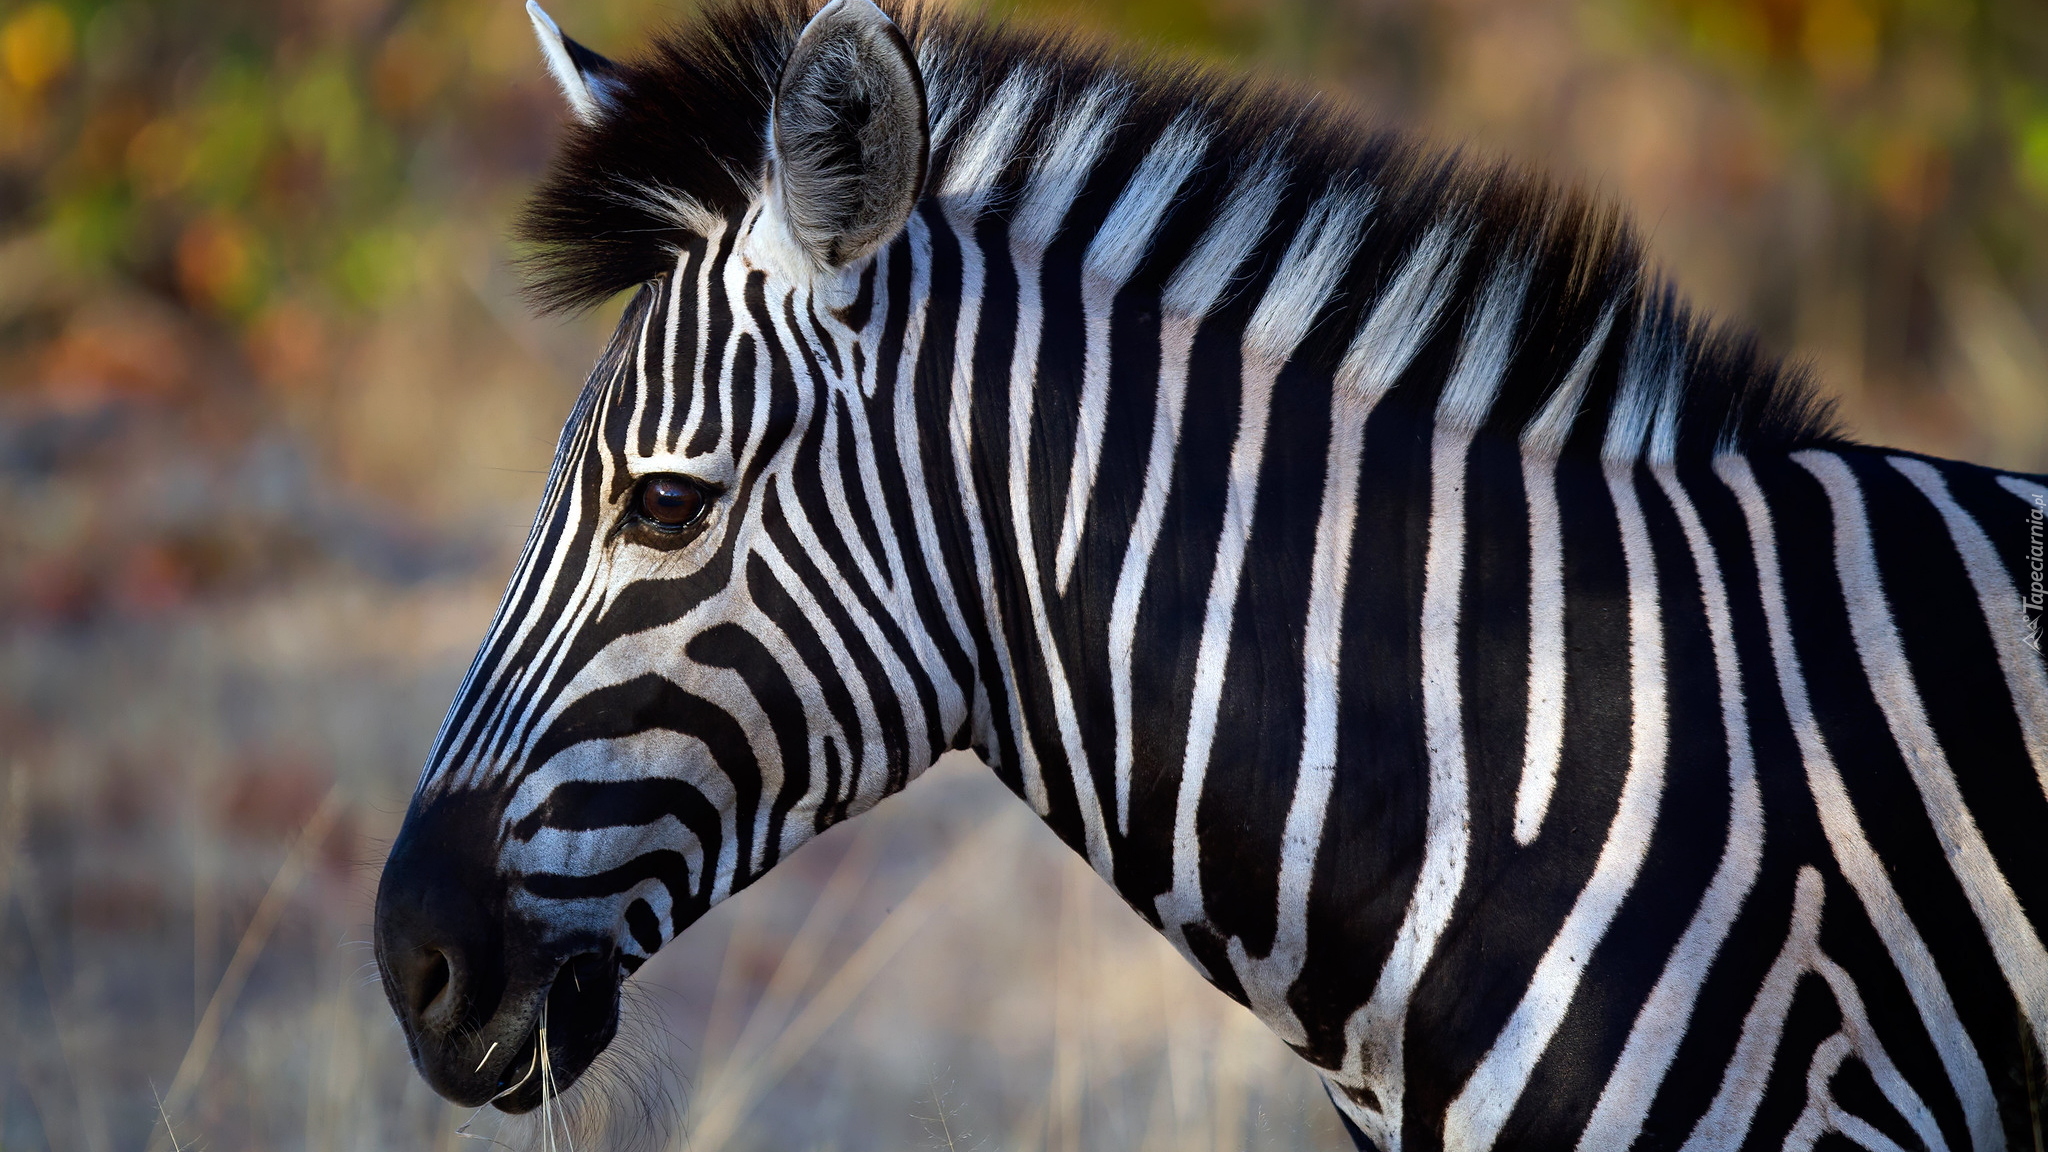 Zebra, Profil